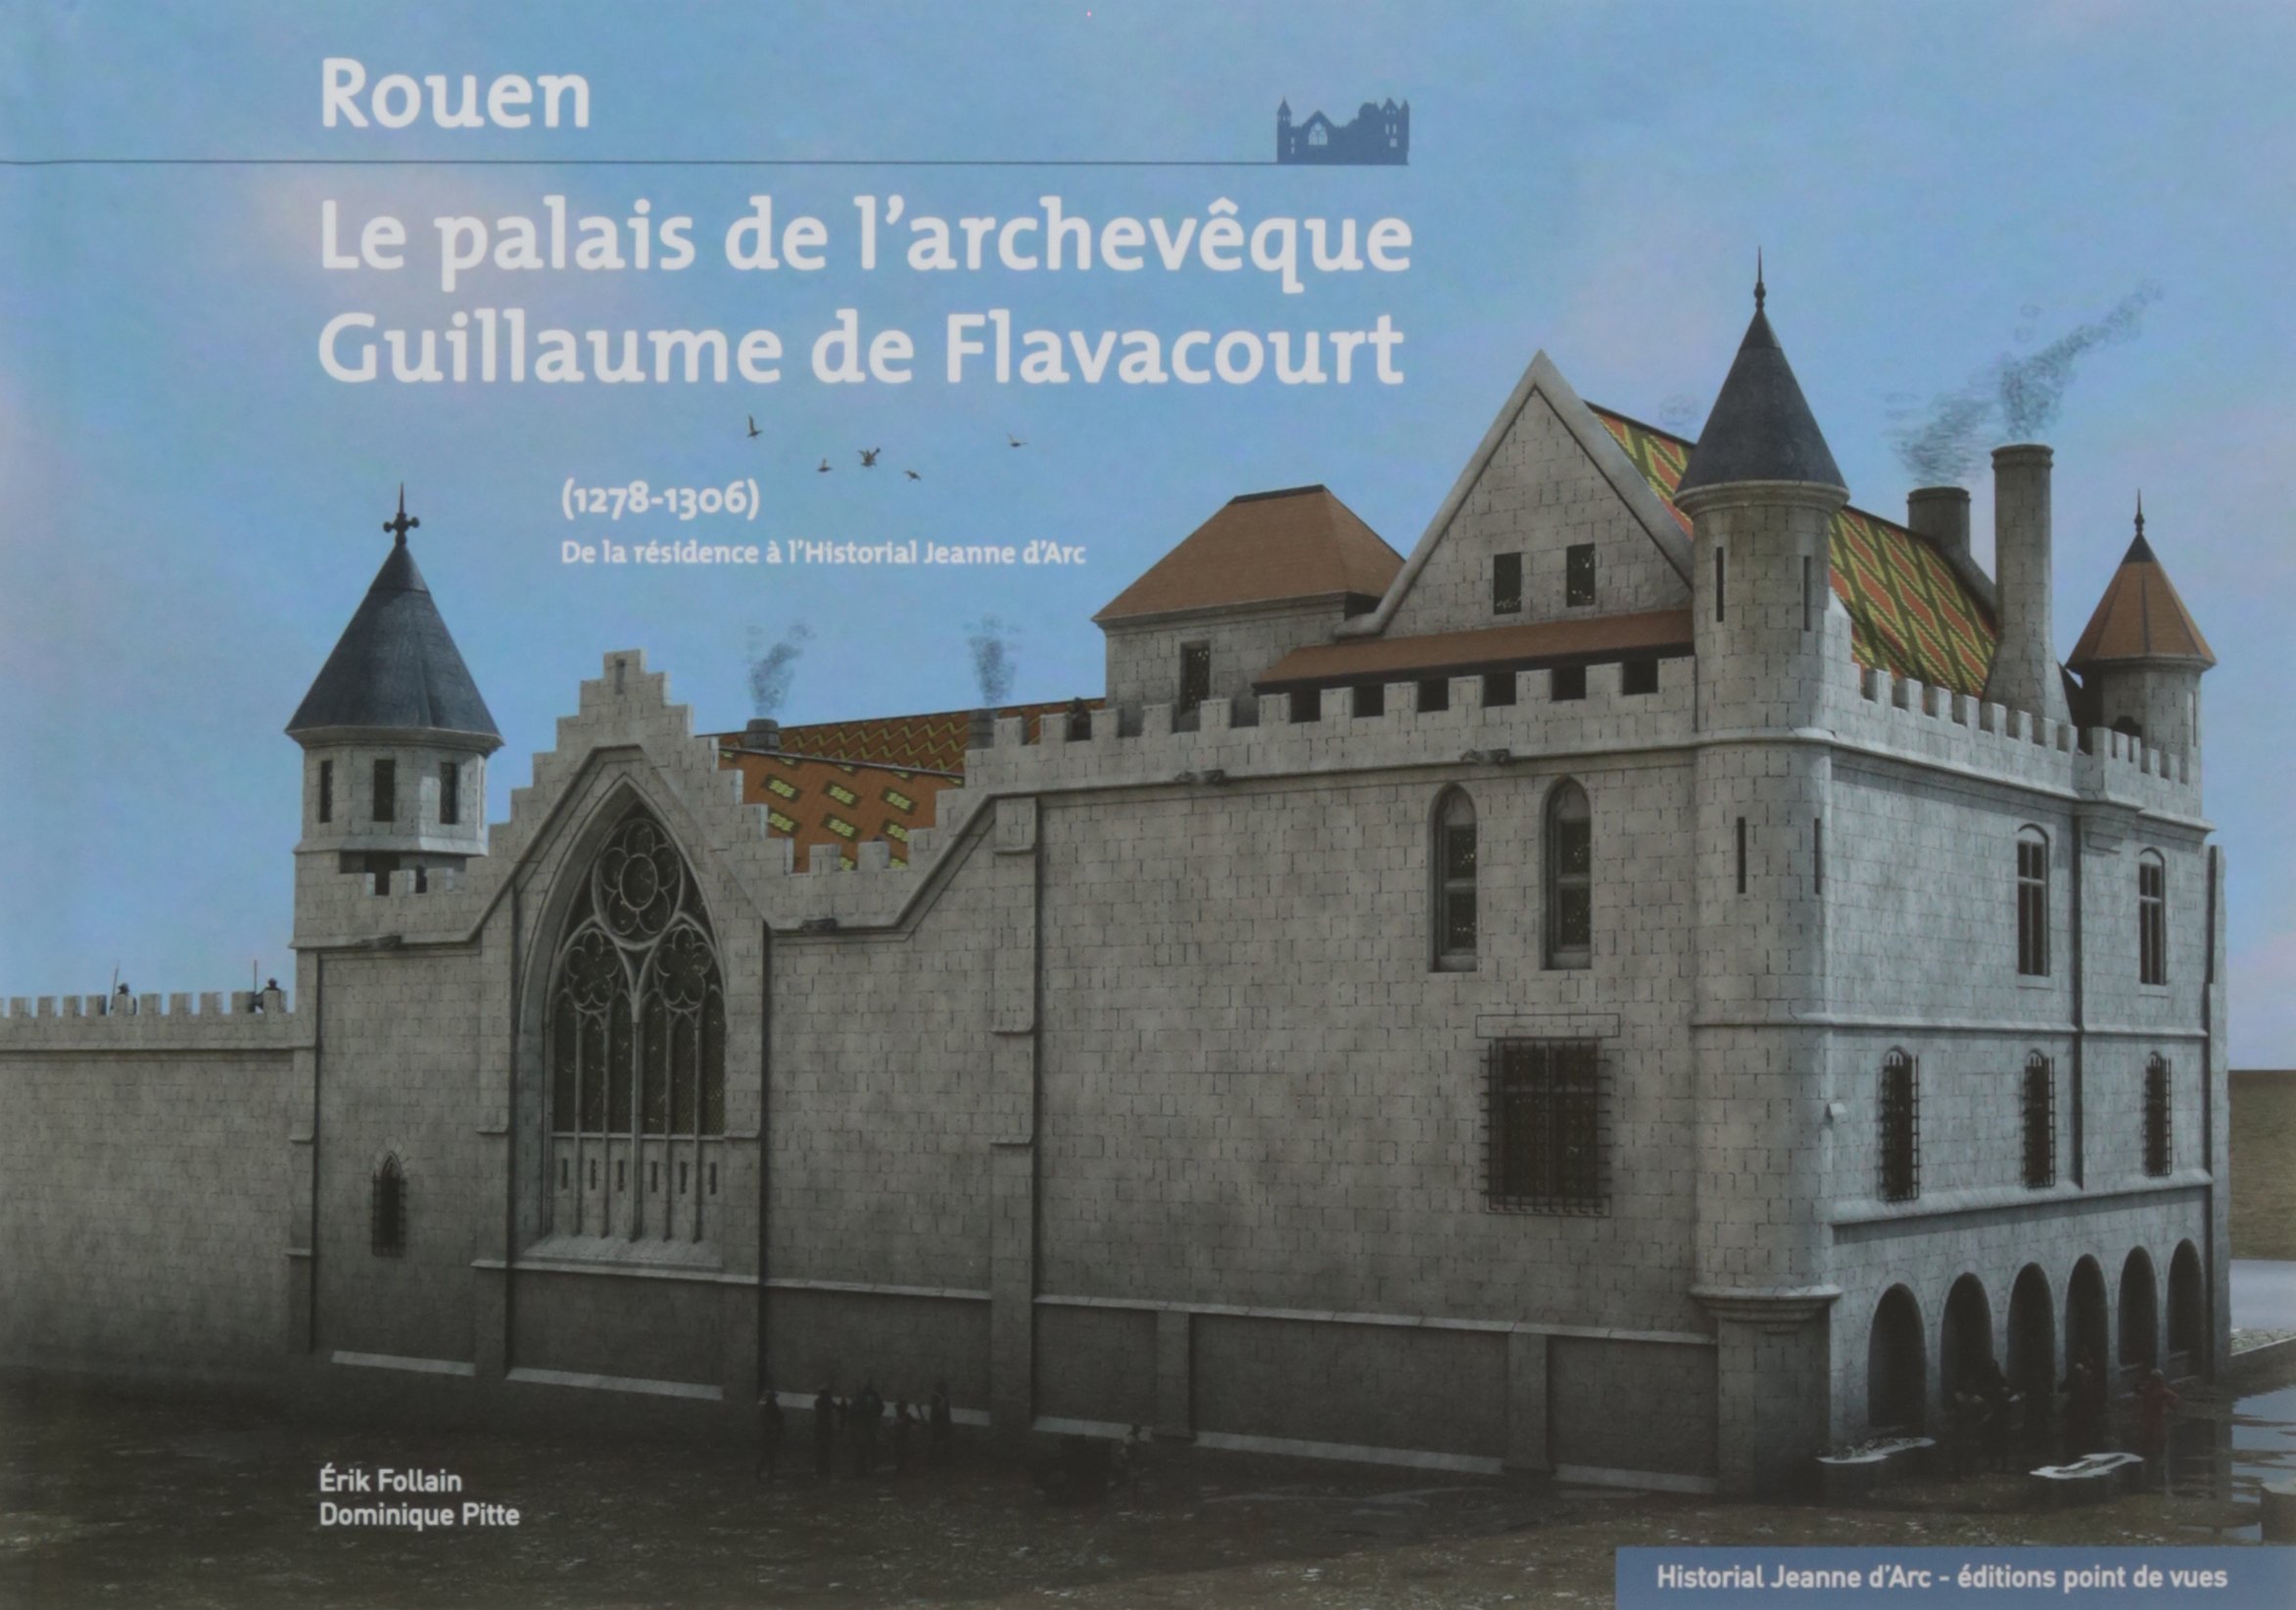 ÉPUISÉ - Rouen, le palais de l'archevêque Guillaume de Flavacourt (1278-1306). De la résidence à l'Historial Jeanne d'Arc, 2016.